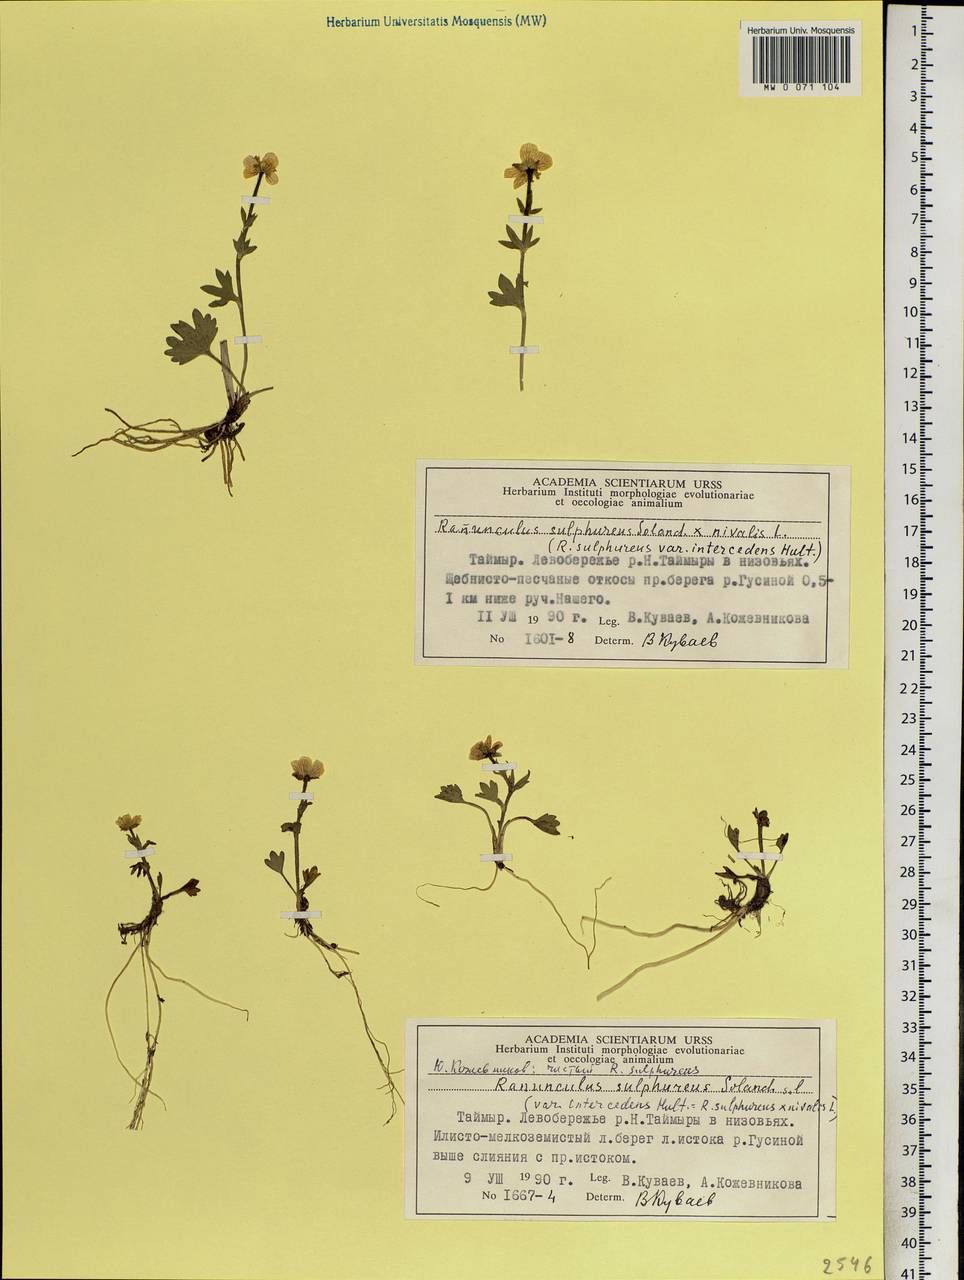 Ranunculus sulphureus, Siberia, Central Siberia (S3) (Russia)